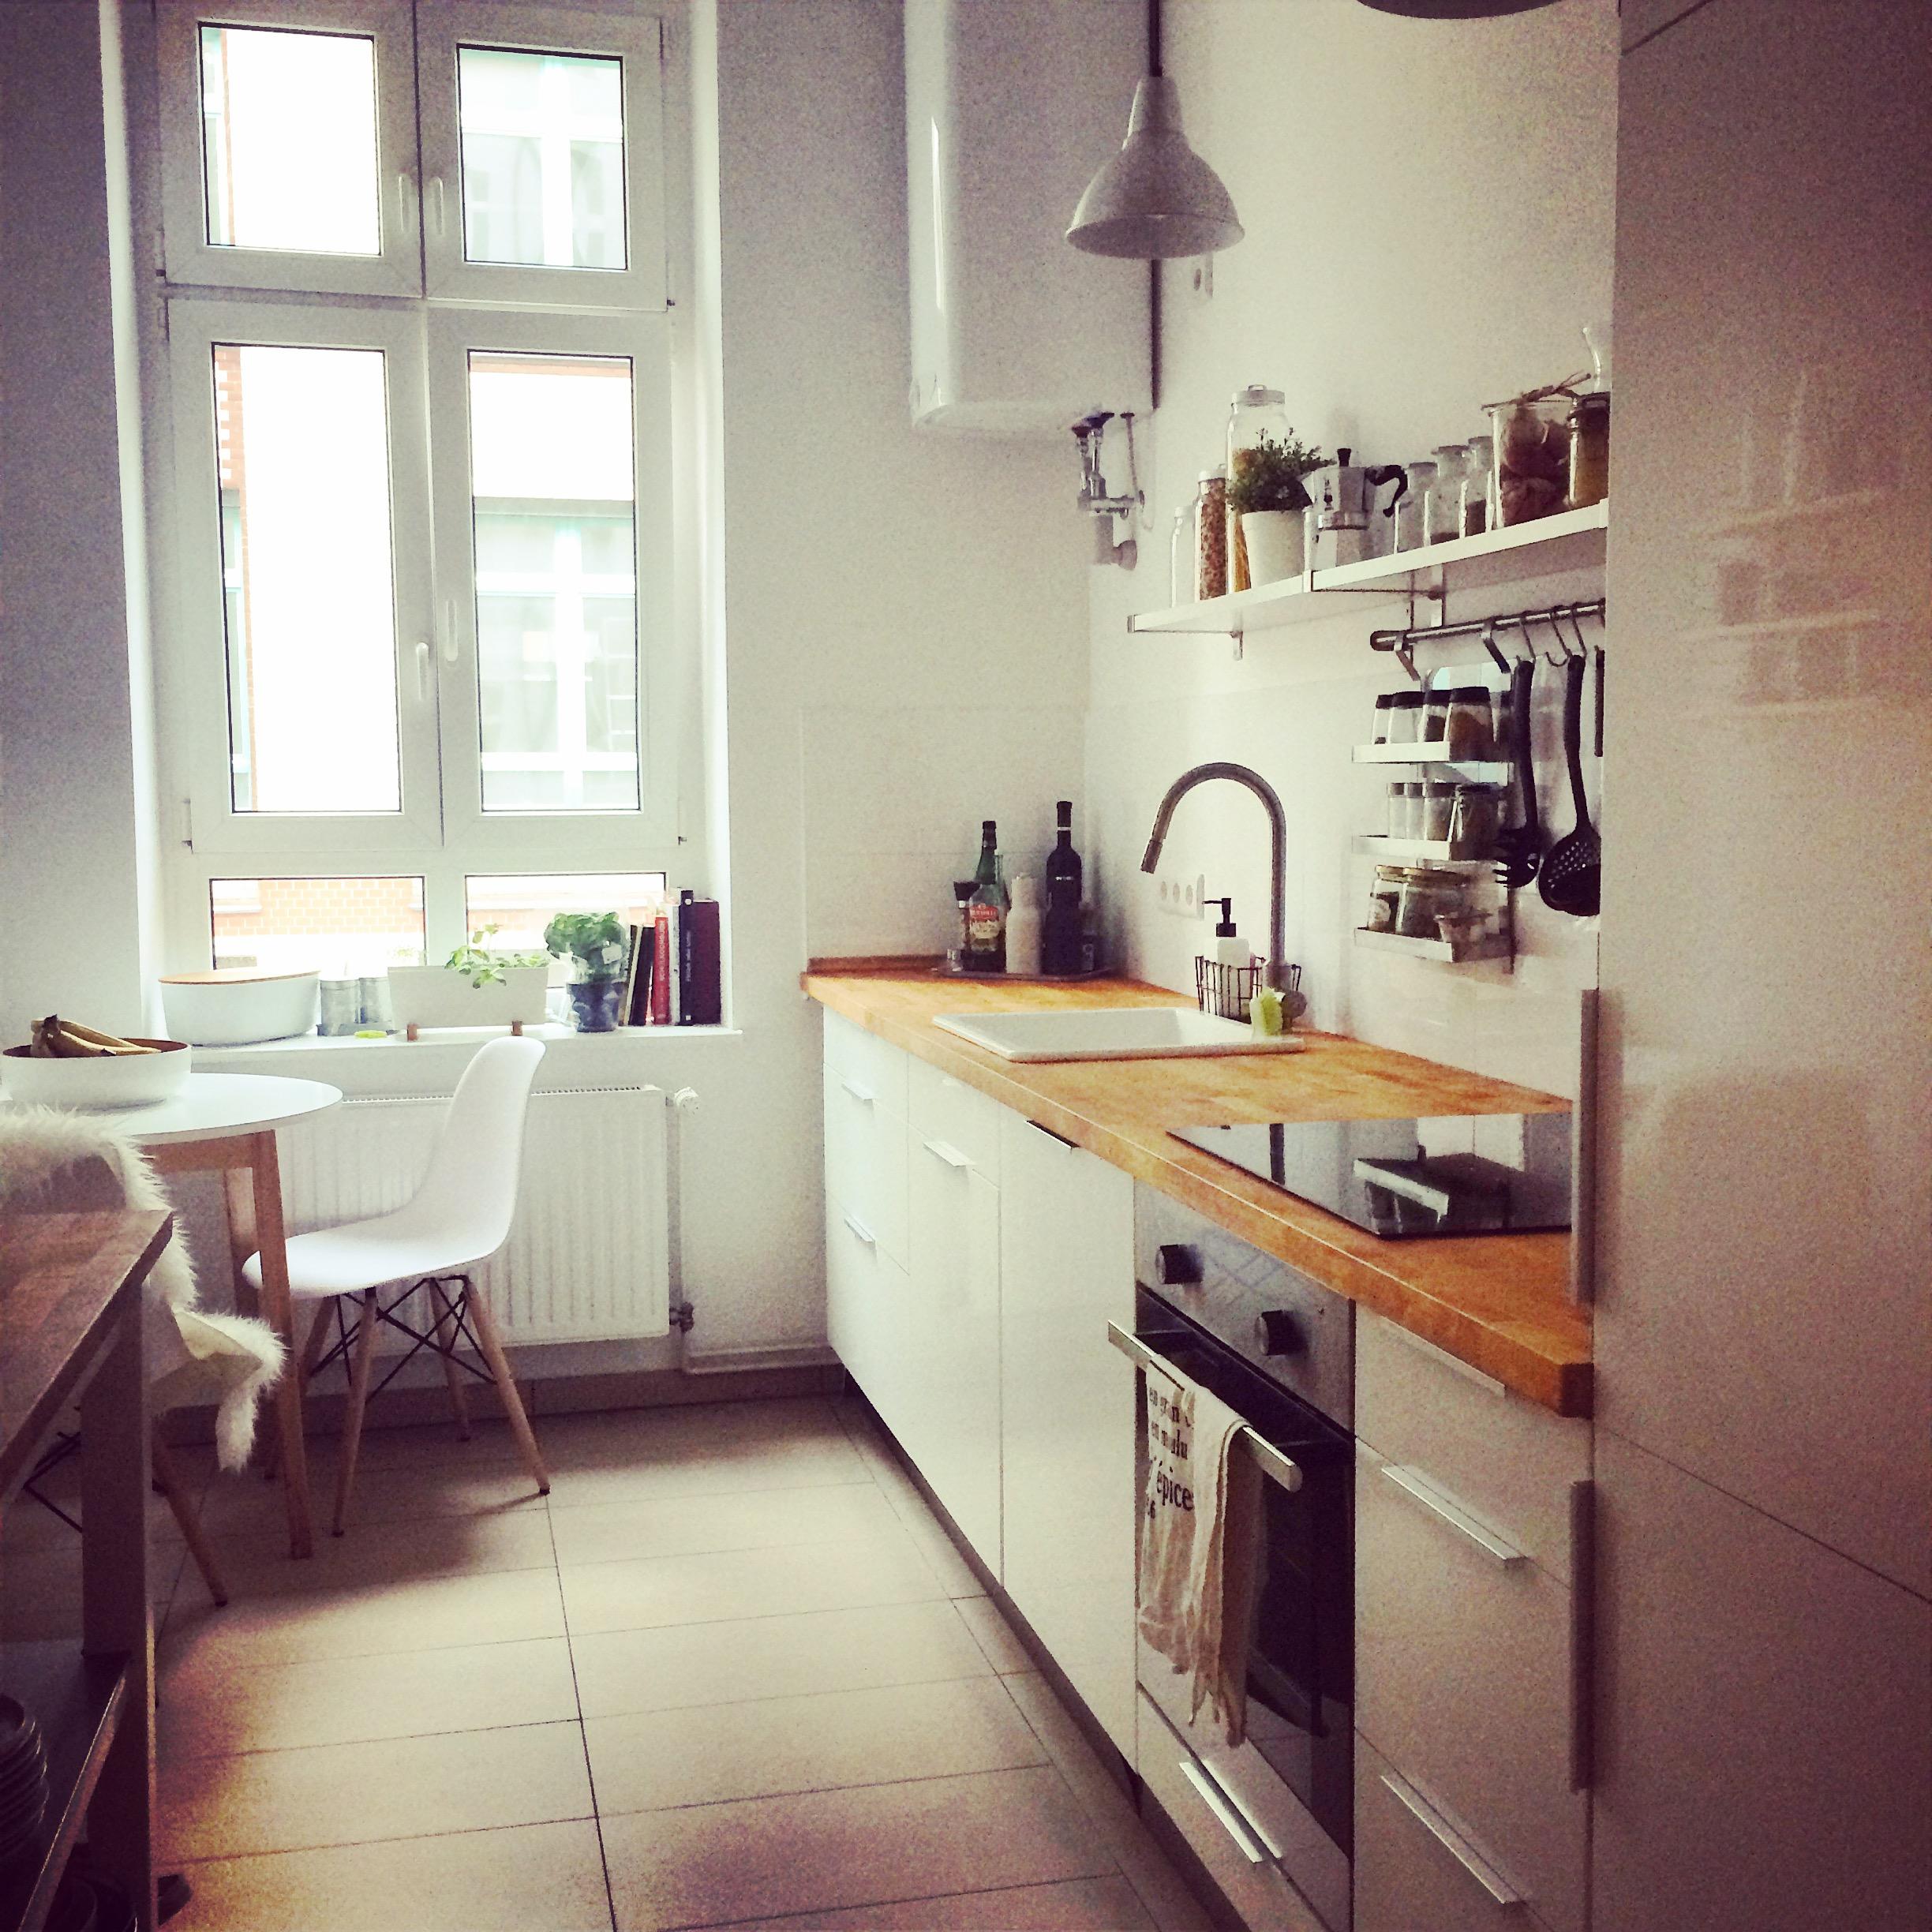 My kitchen
#kitchen #homelove 